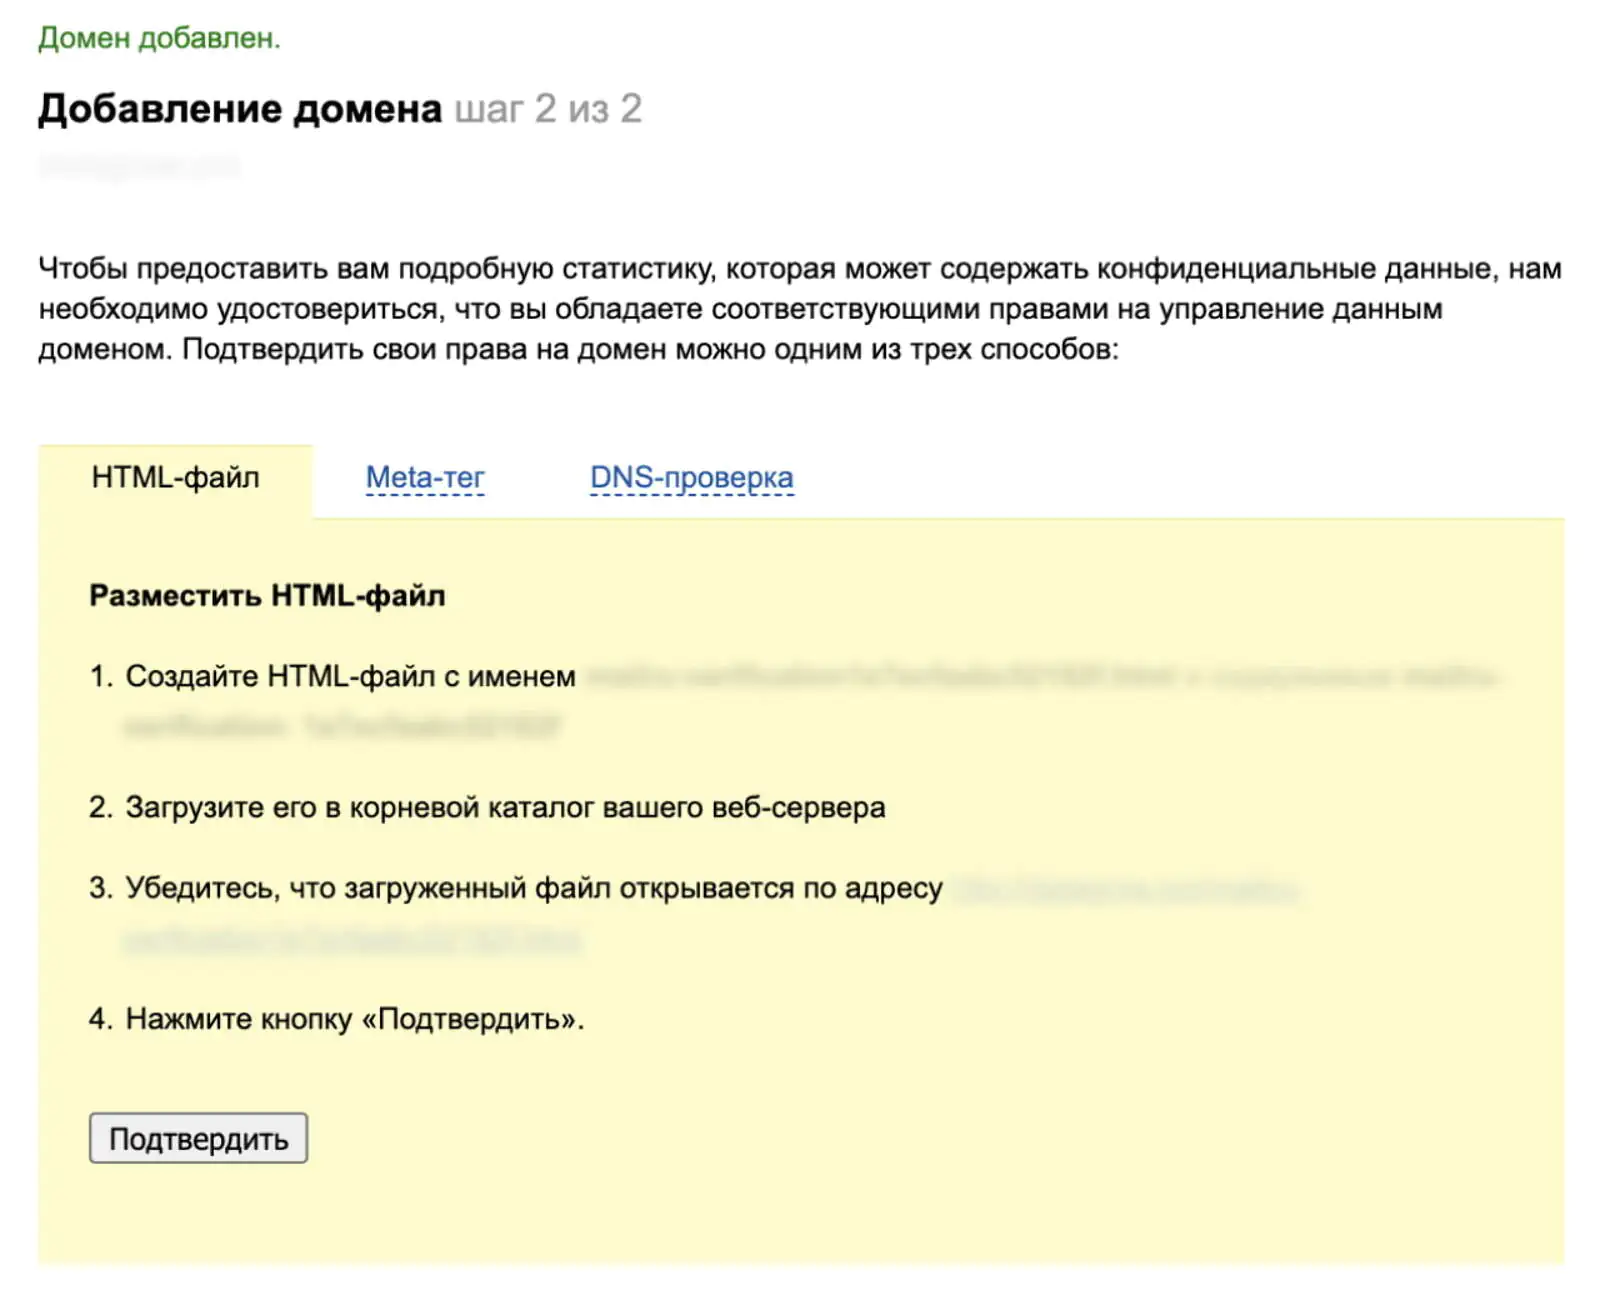 Страница подтверждения домена в постмастере Mail.ru